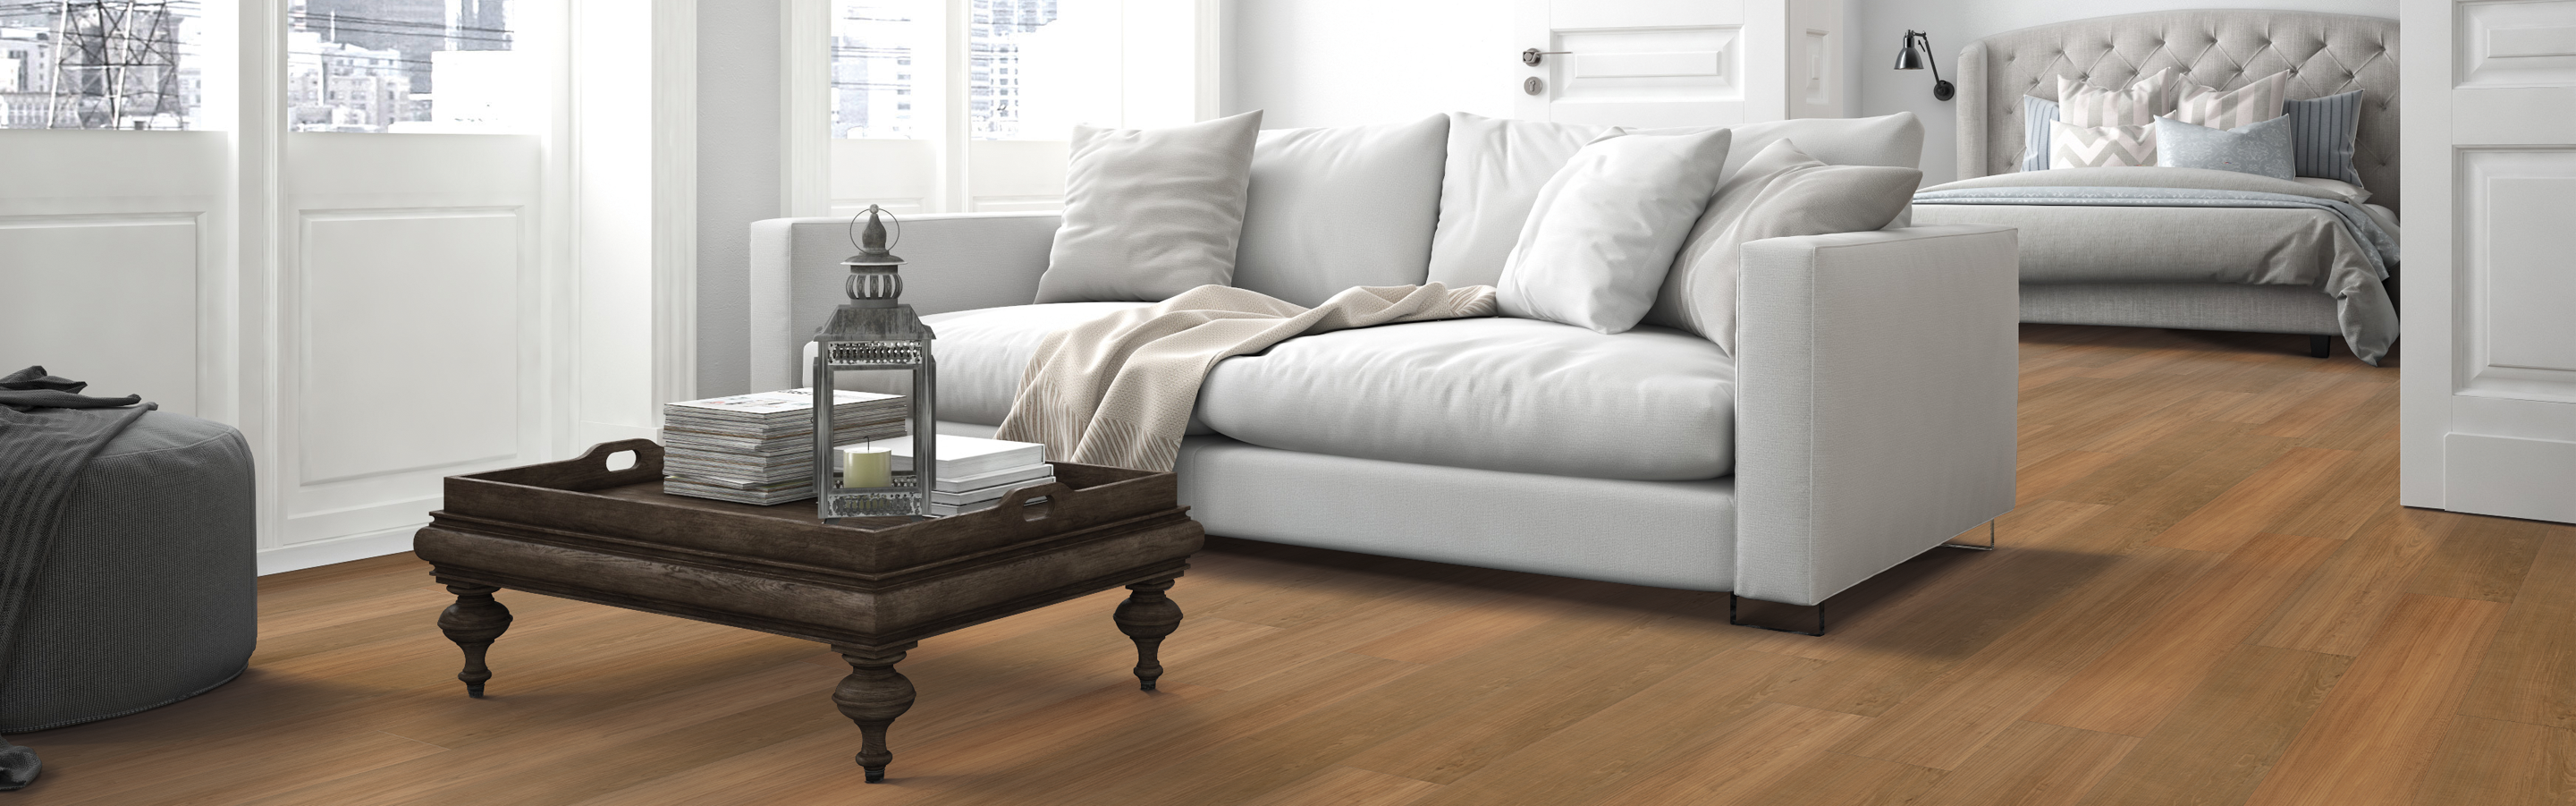 Luxury vinyl plank in bedroom